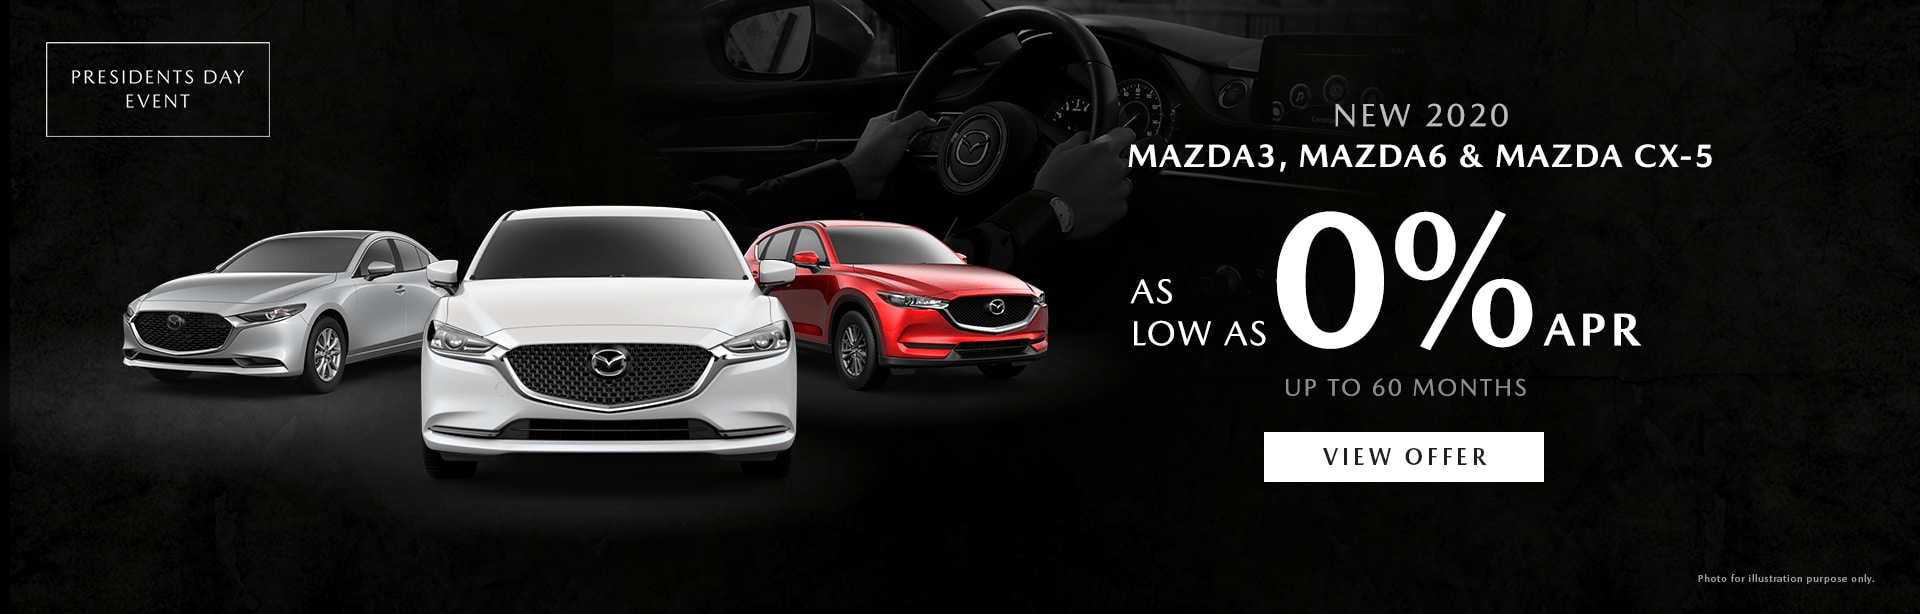 New and Used Mazda dealership in Kansas City | Premier Mazda | Mazda